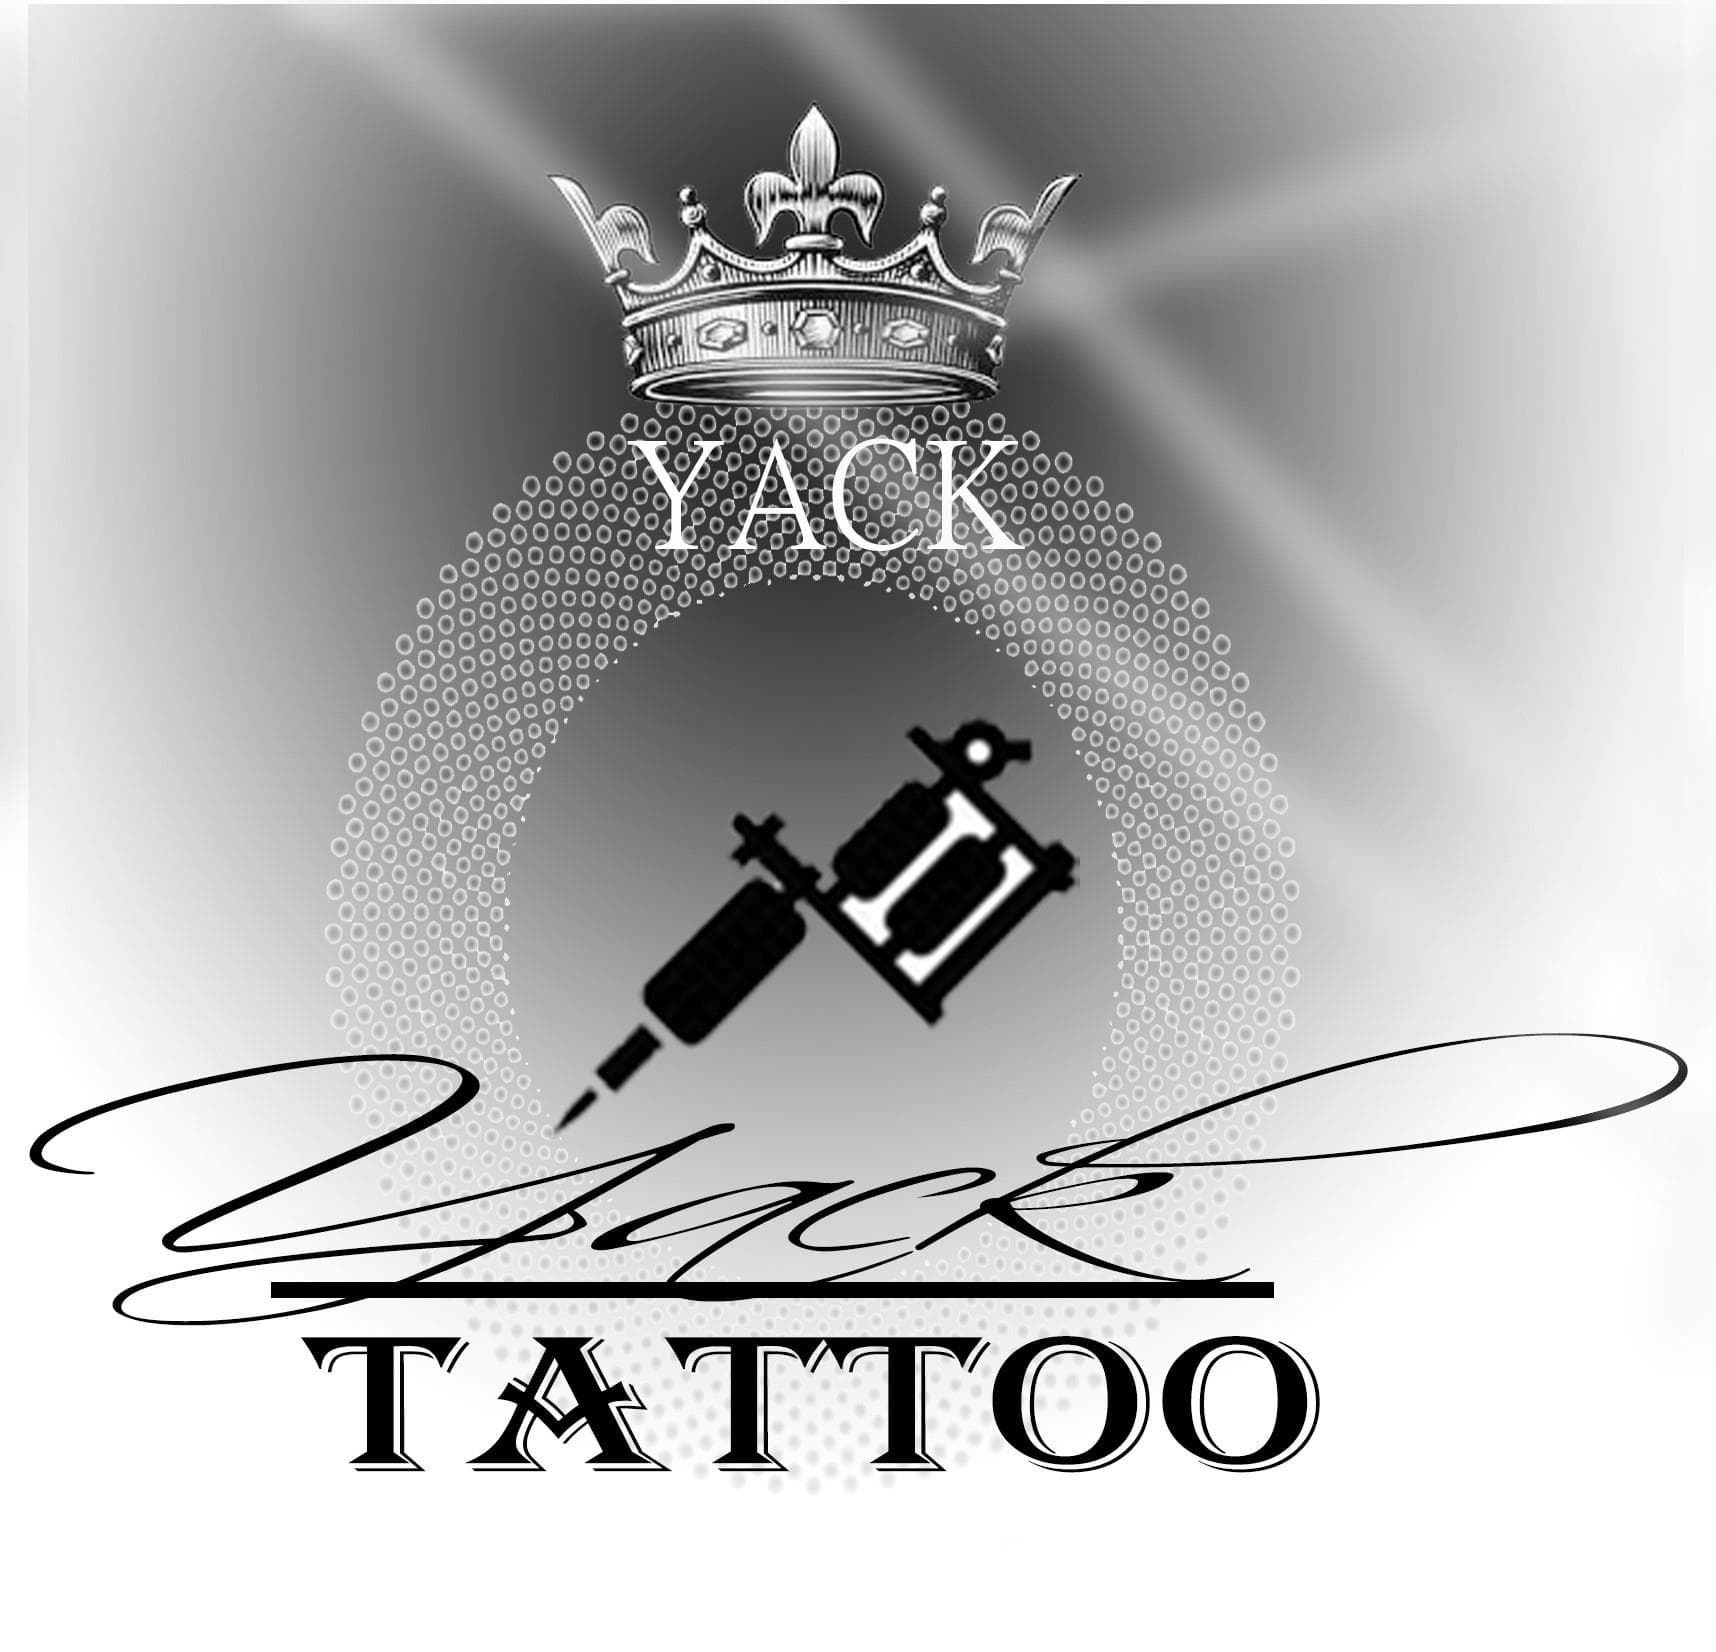 Yack Tattoo - סטודיו לקעקועים image